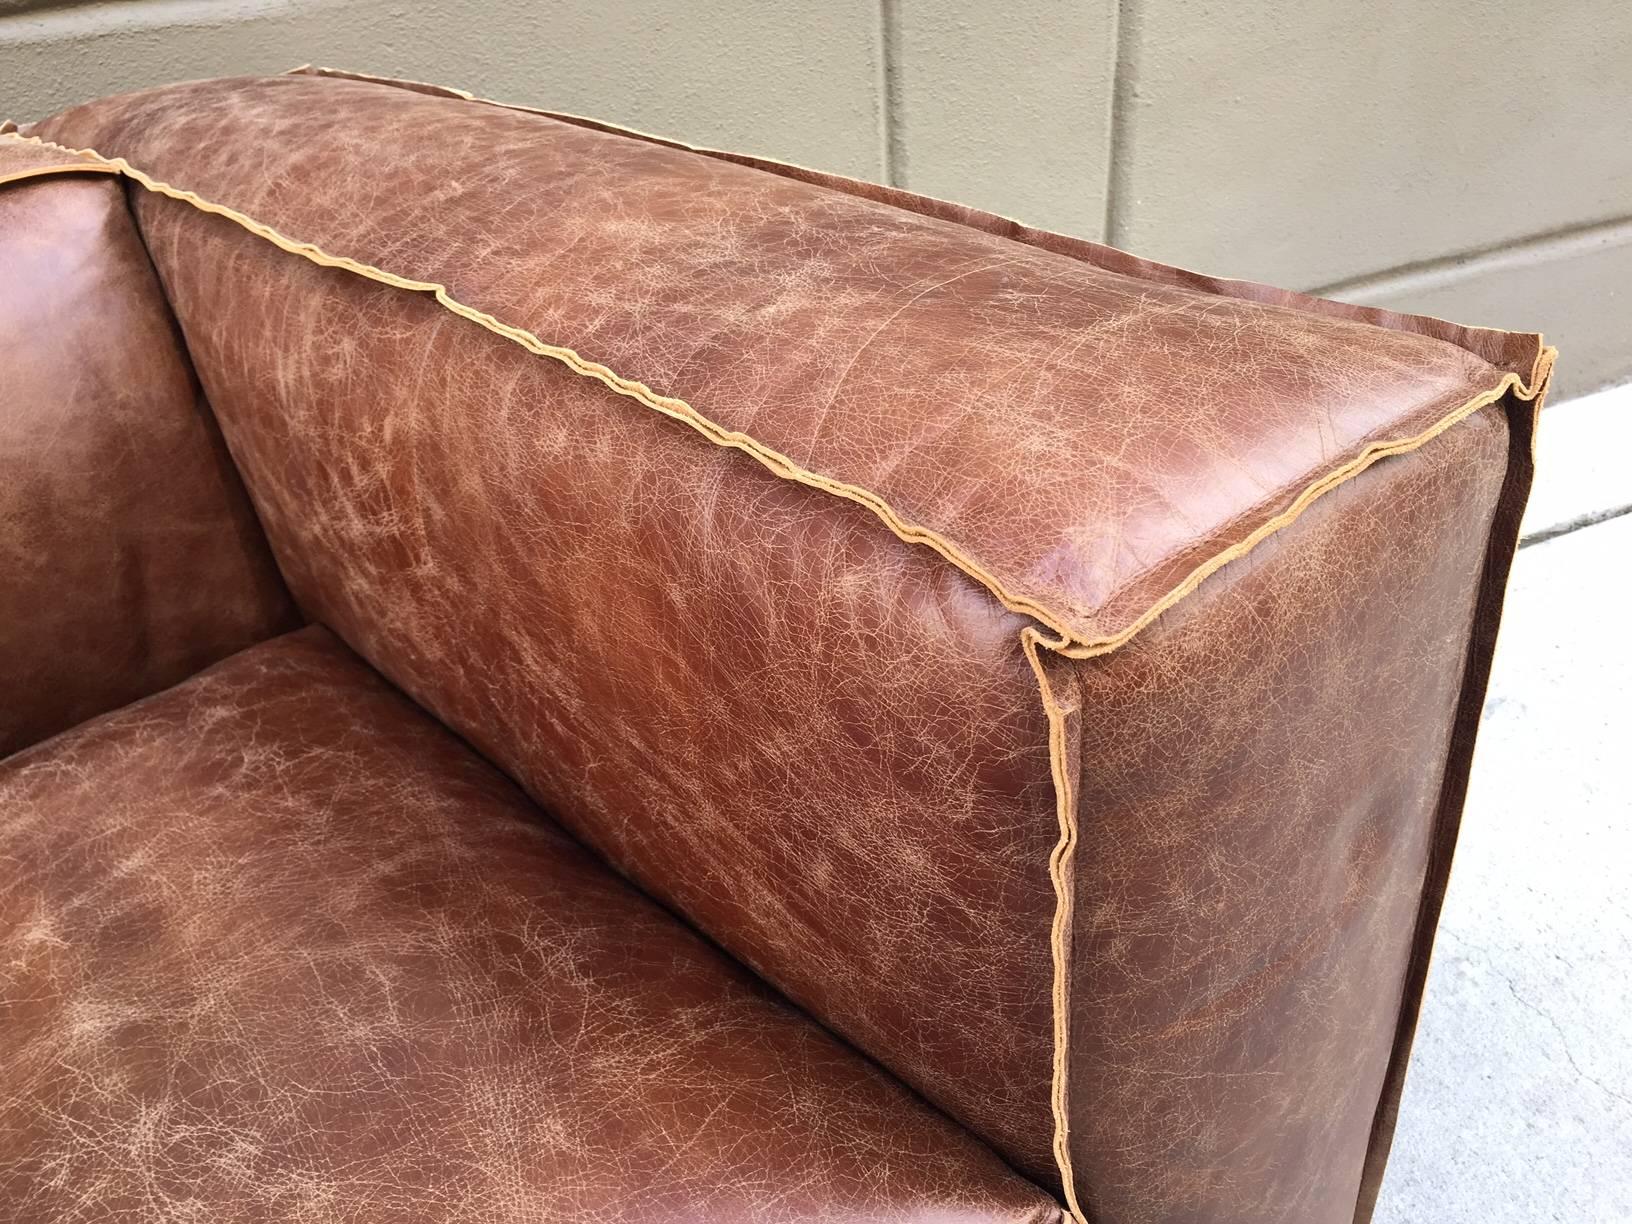 distressed tan leather sofa